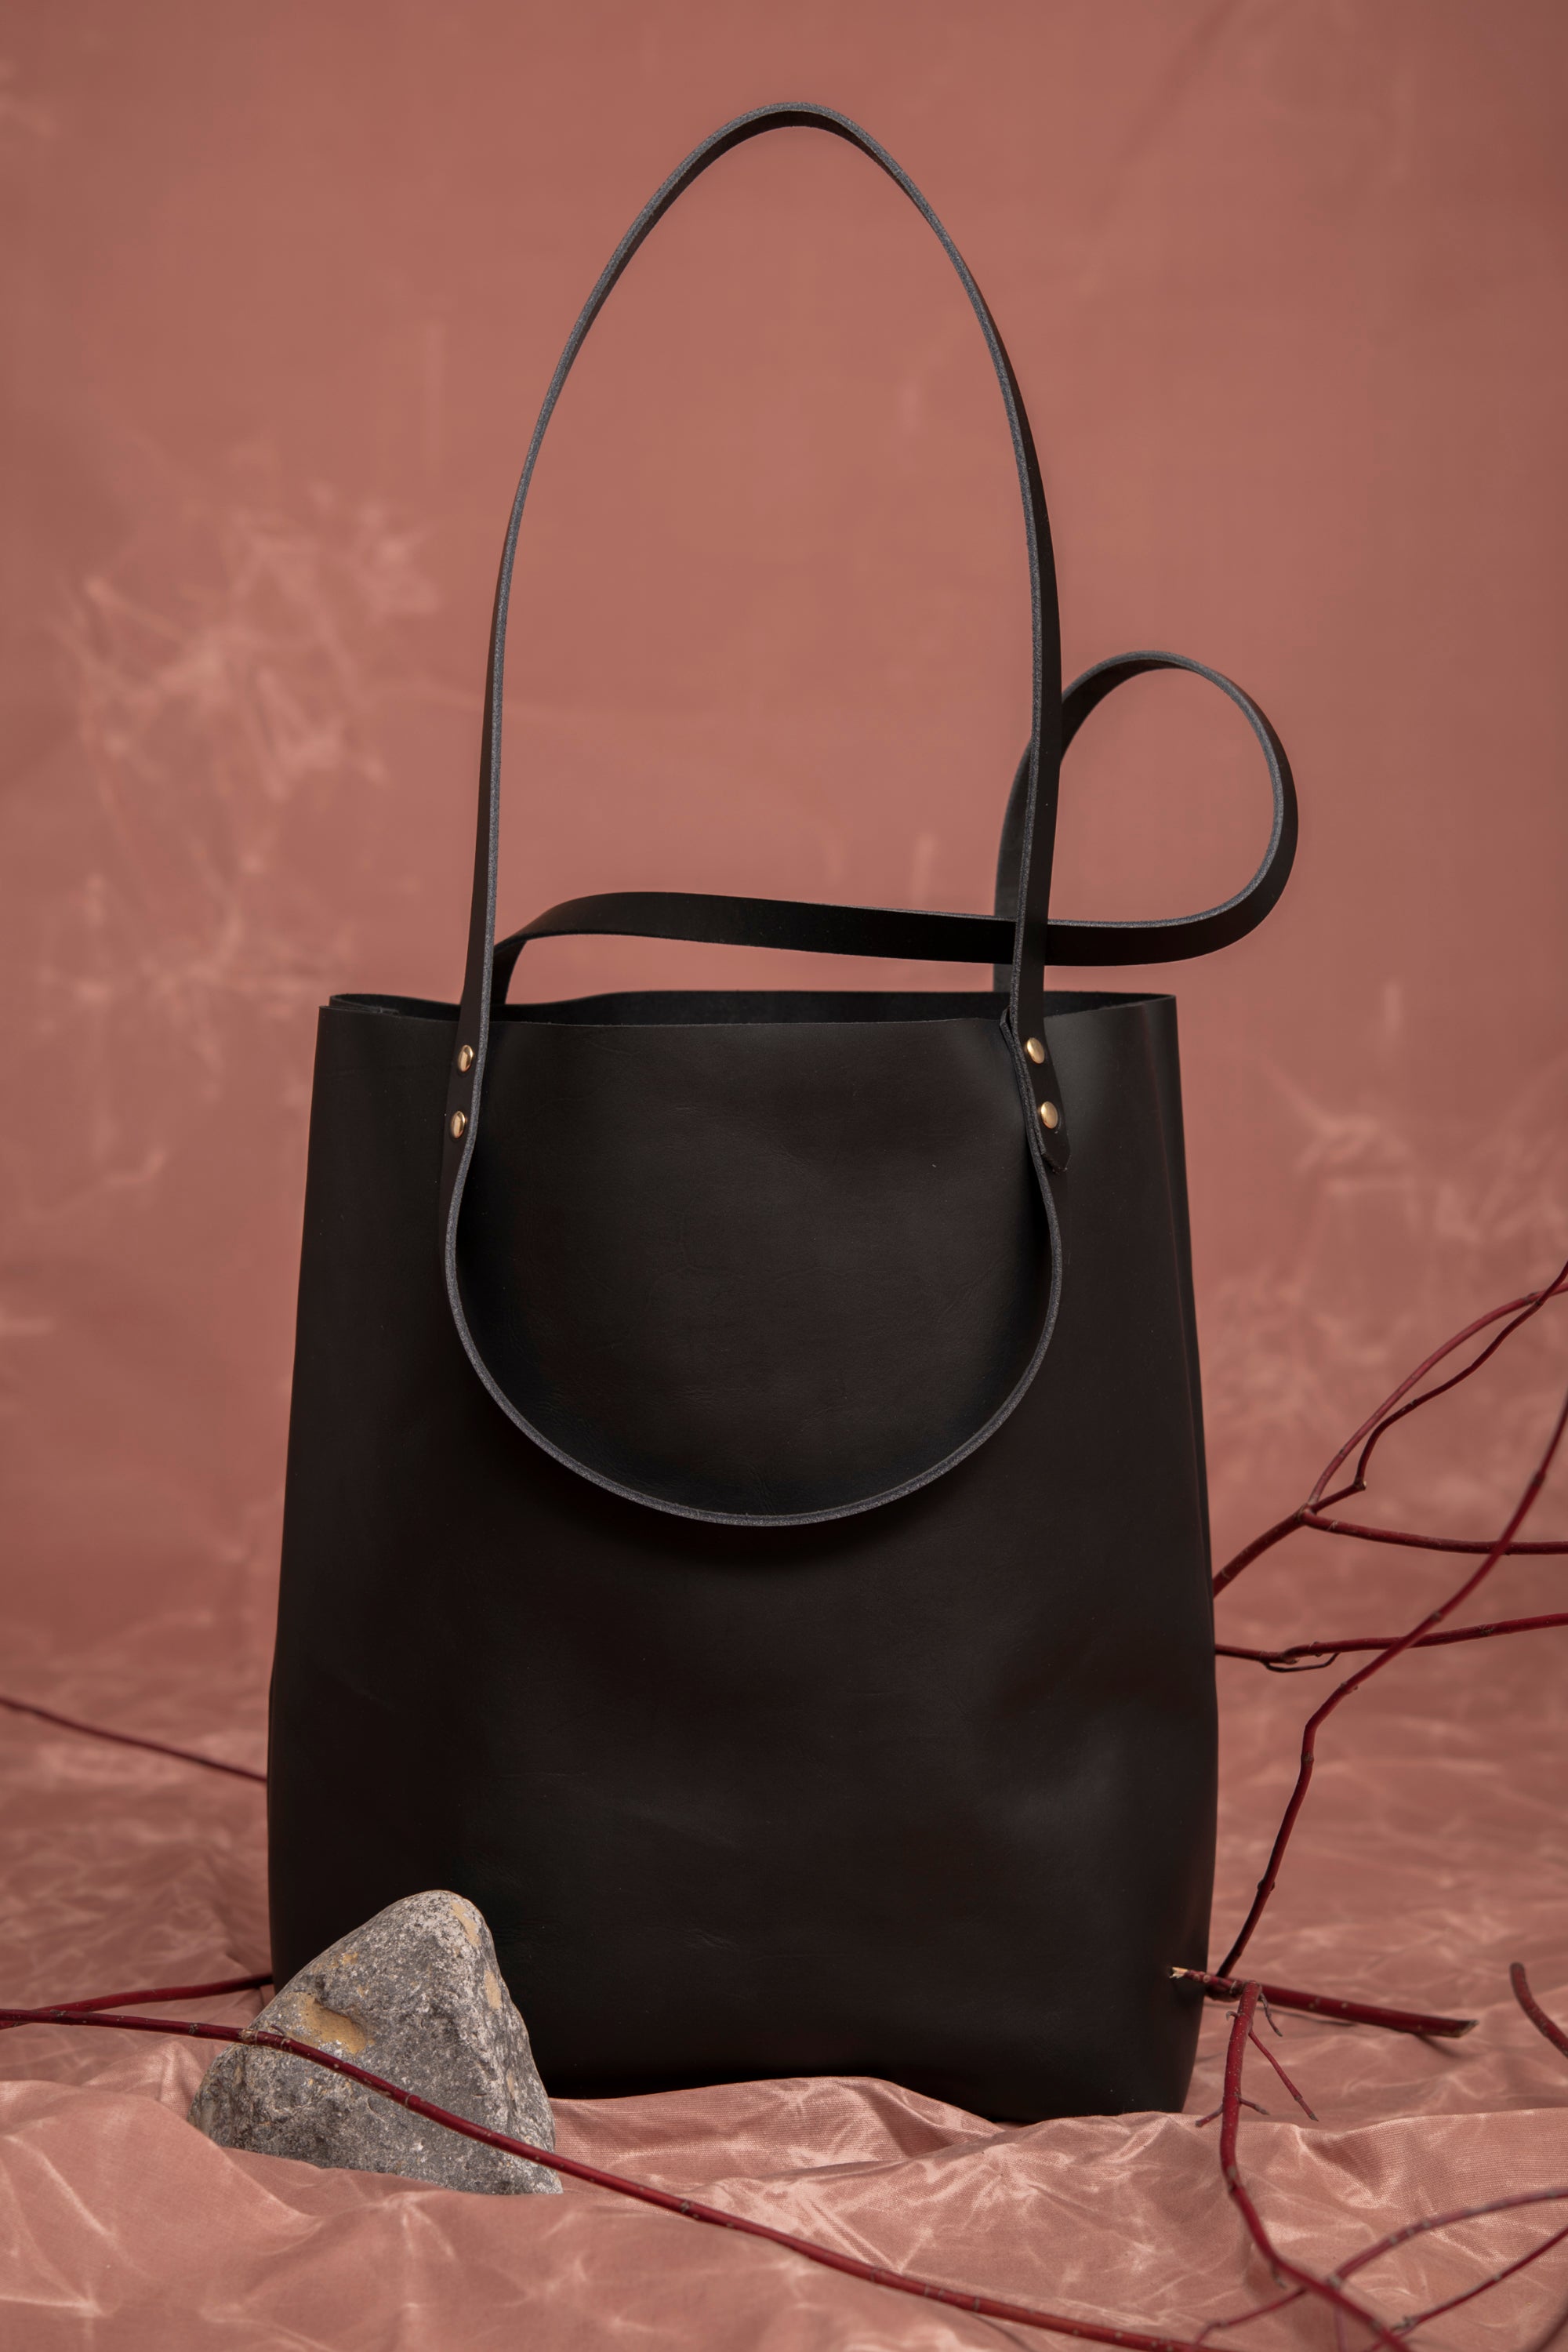 Veinage Molson black leather minimalist tote bag 